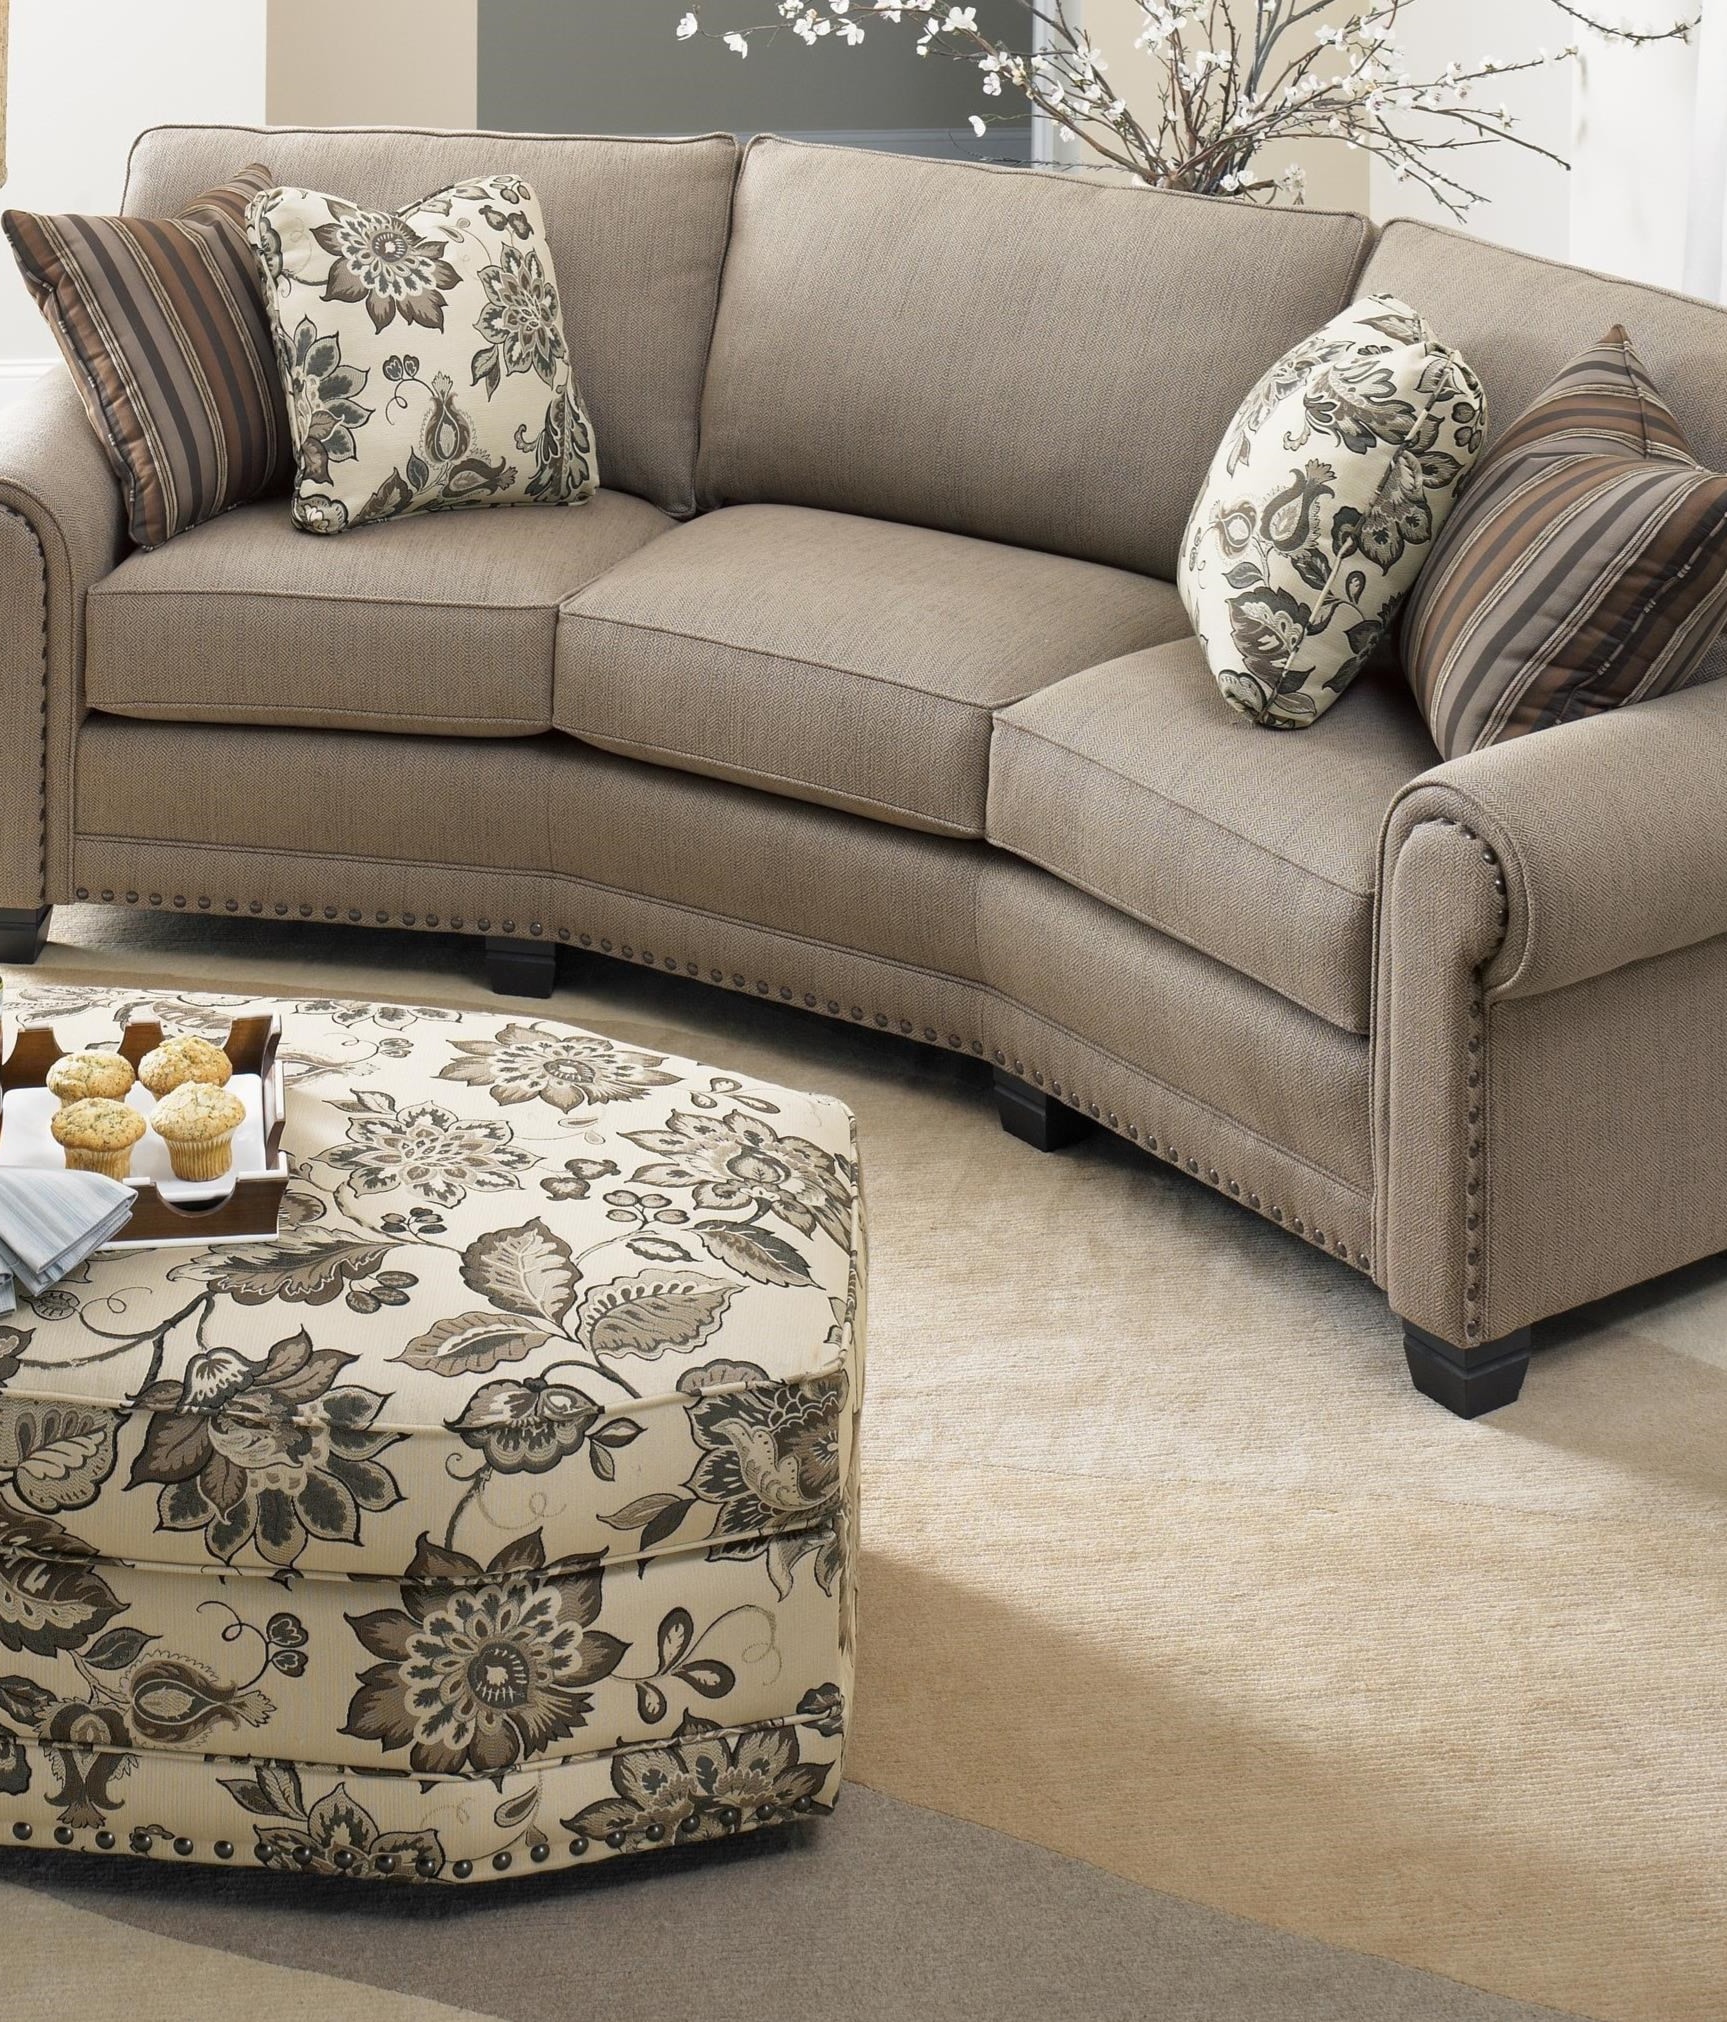 Sofa and ottoman